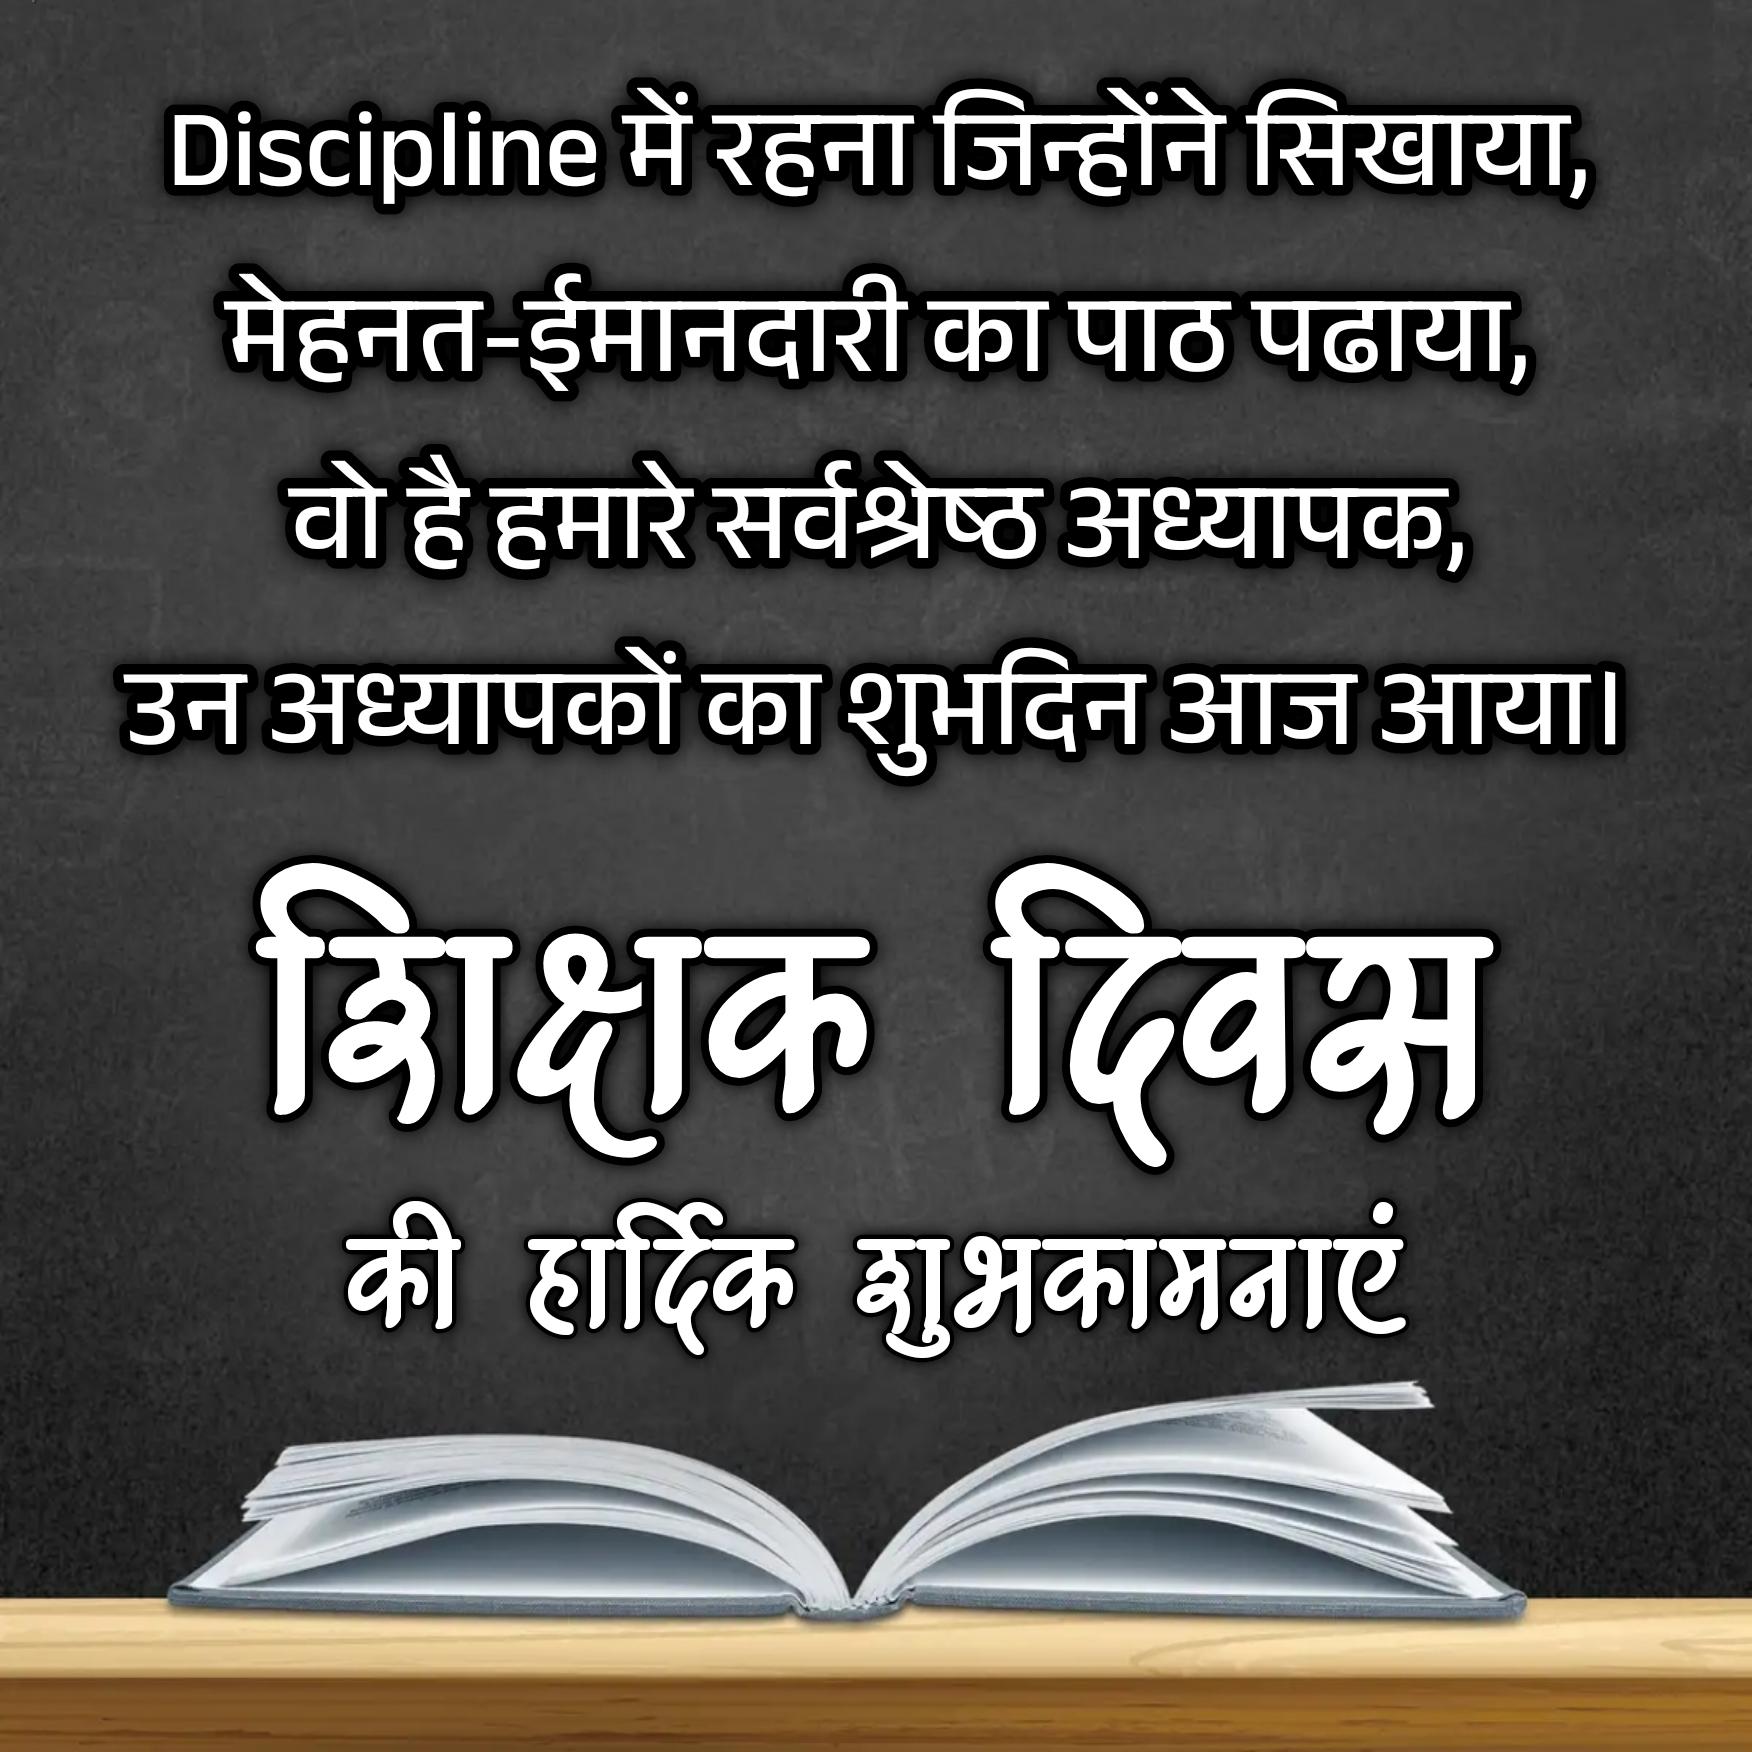 Discipline में रहना जिन्होंने सिखाया